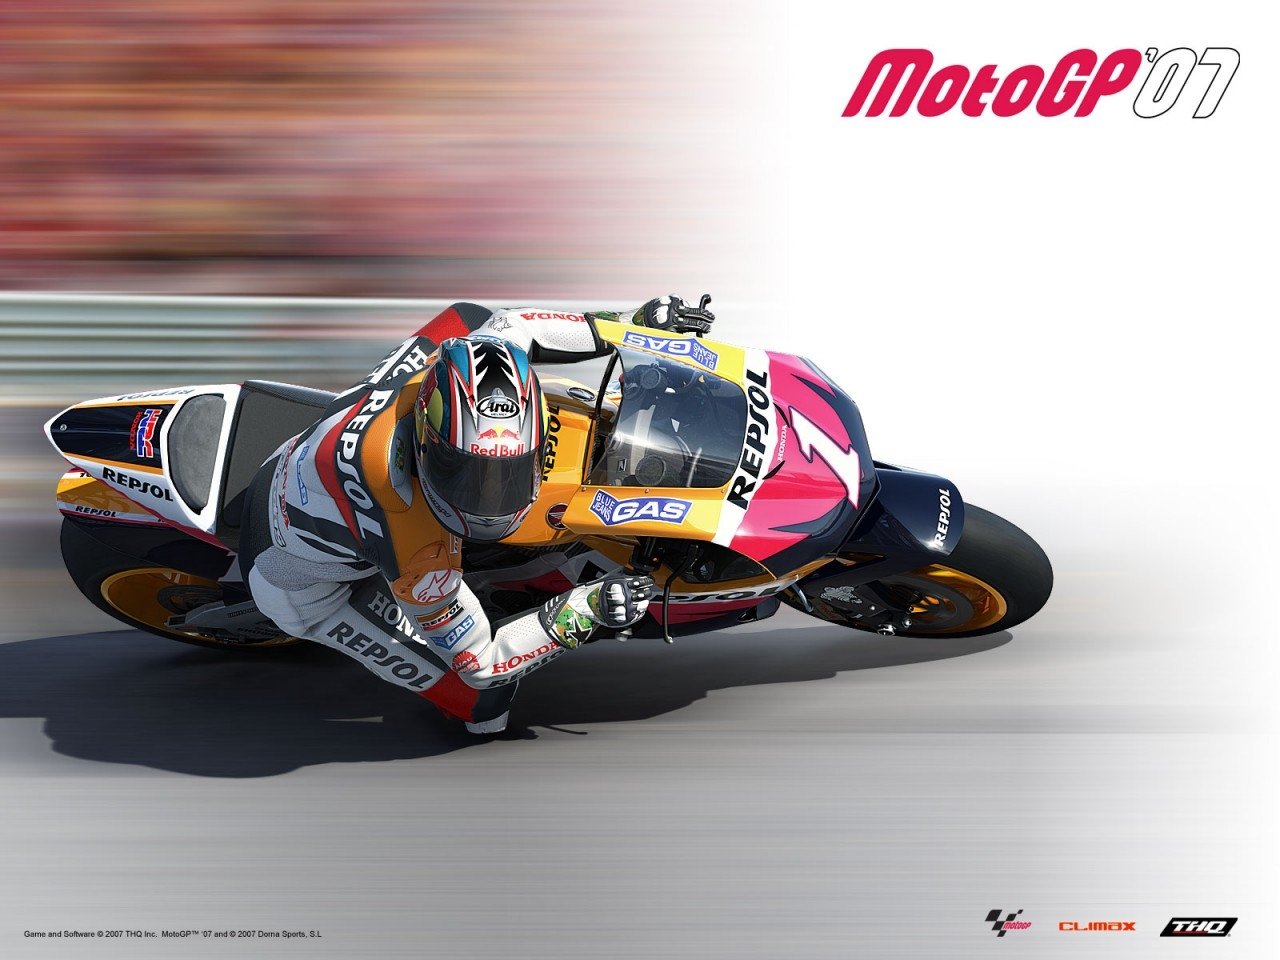 MotoGP - Desktop Wallpapers, Phone Wallpaper, PFP, Gifs, and More!